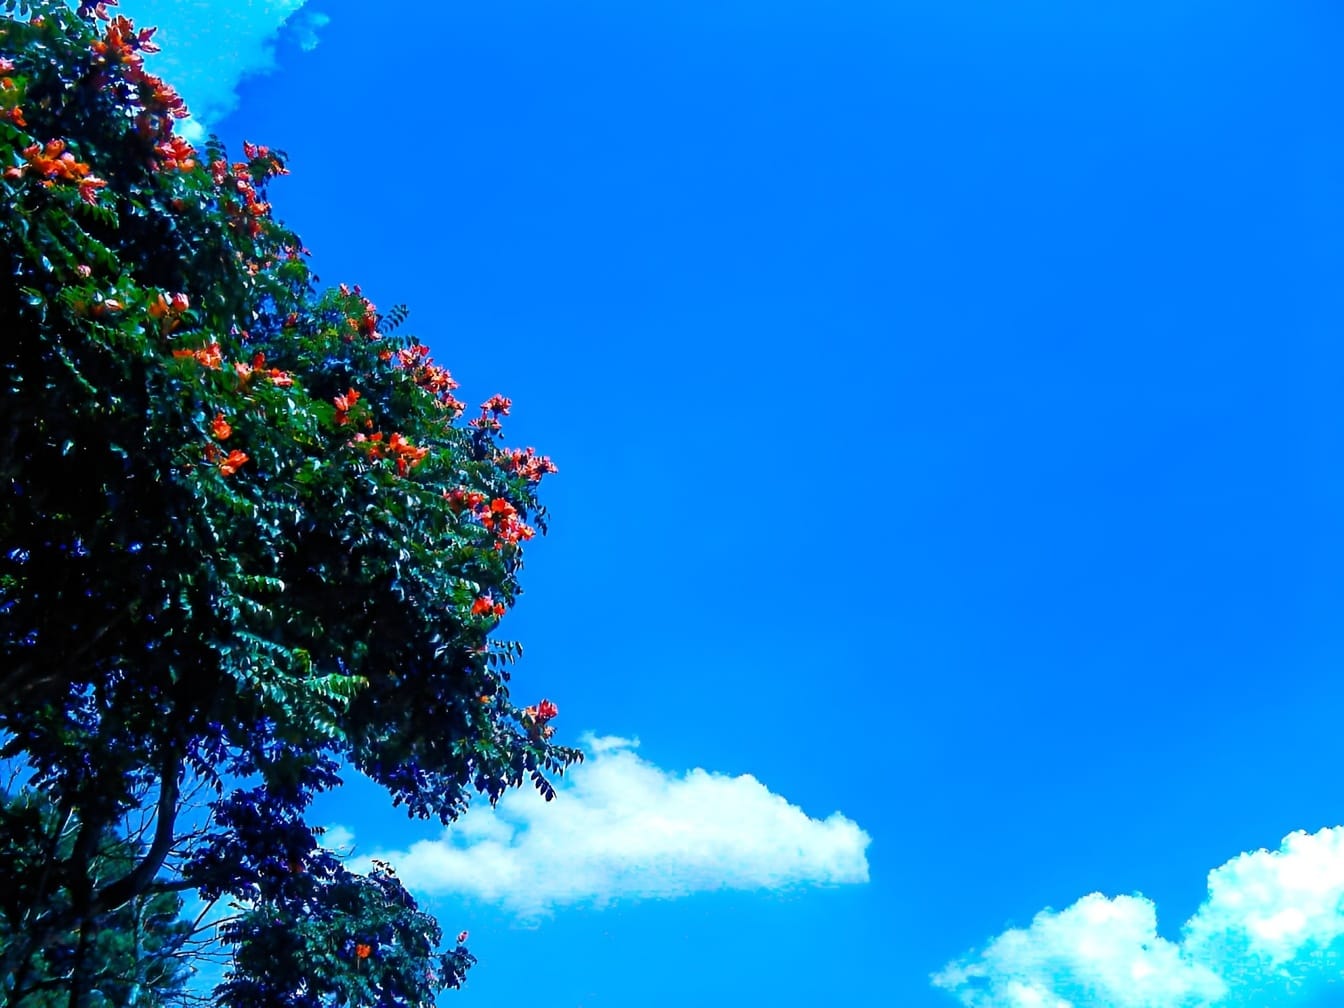 Afrikansk träd (Spathodea campanulata) med röda blommor och mörkblå himmel